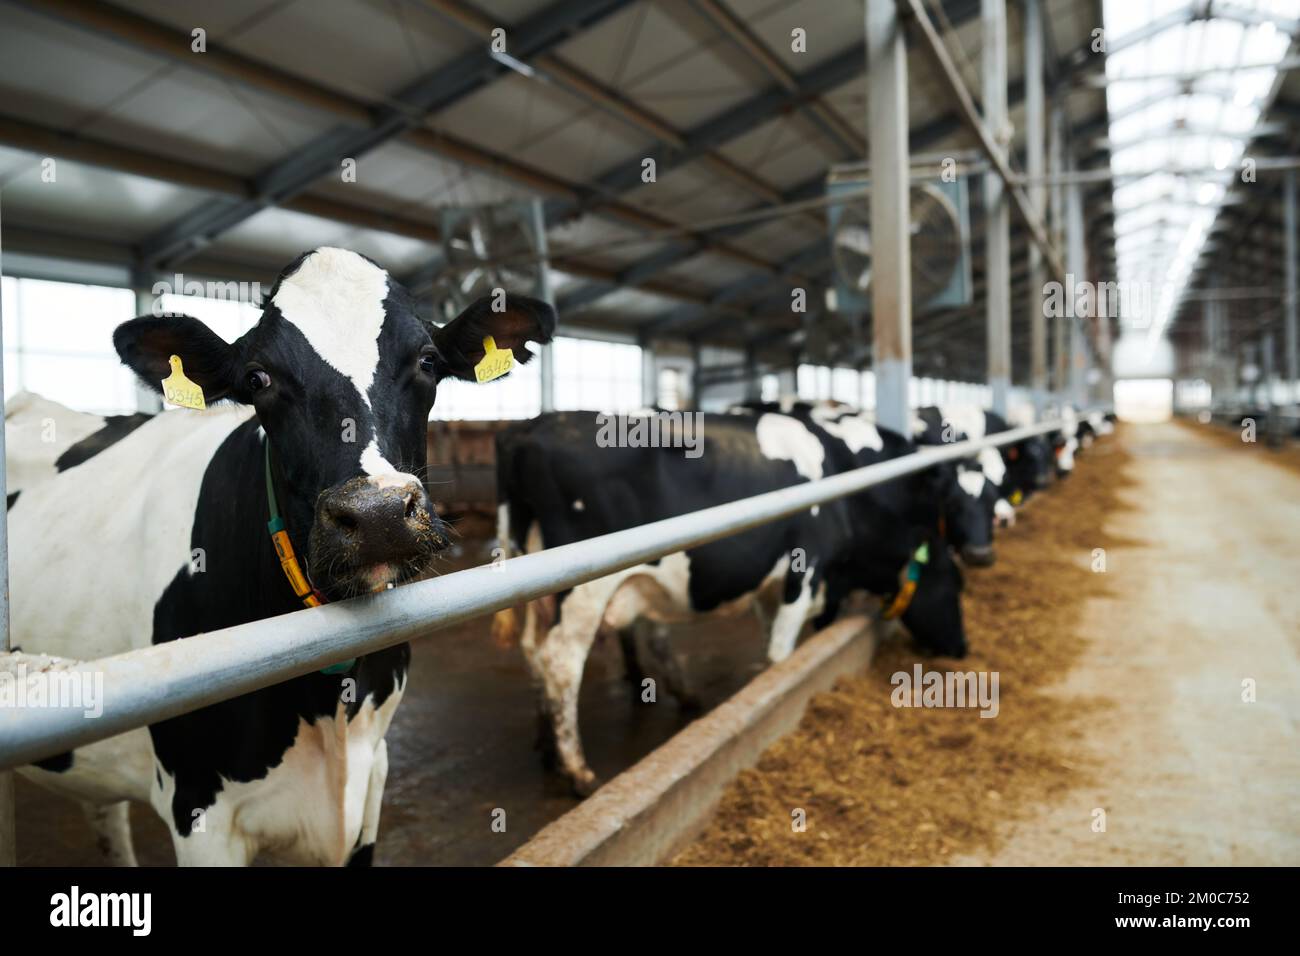 Selektiver Fokus auf schwarz-weiße Milchkuh, die auf die Kamera schaut, während sie im Kuhstall gegen eine Reihe anderer Rinder steht, die Futter fressen Stockfoto